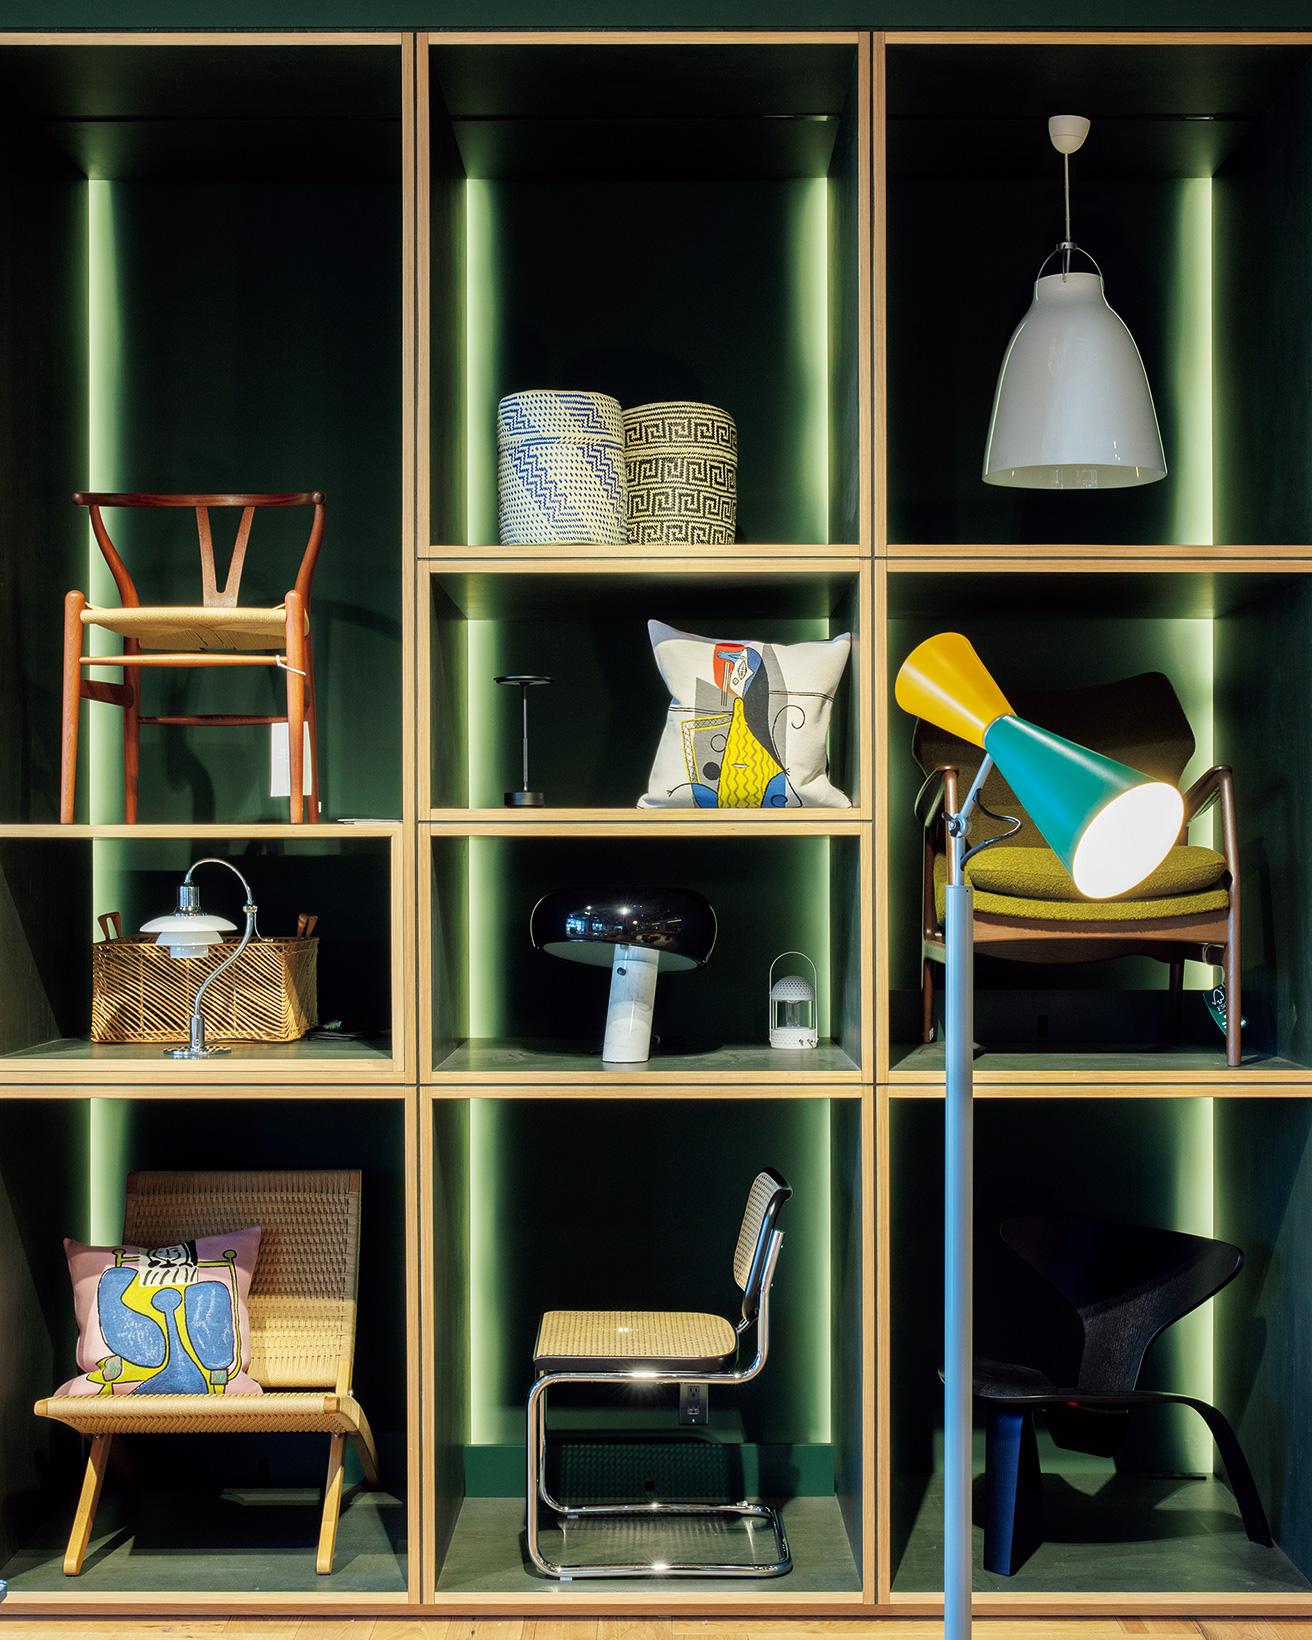 シックな店内に、差し色のようにグリーンの棚が。photo_Satoshi Nagare